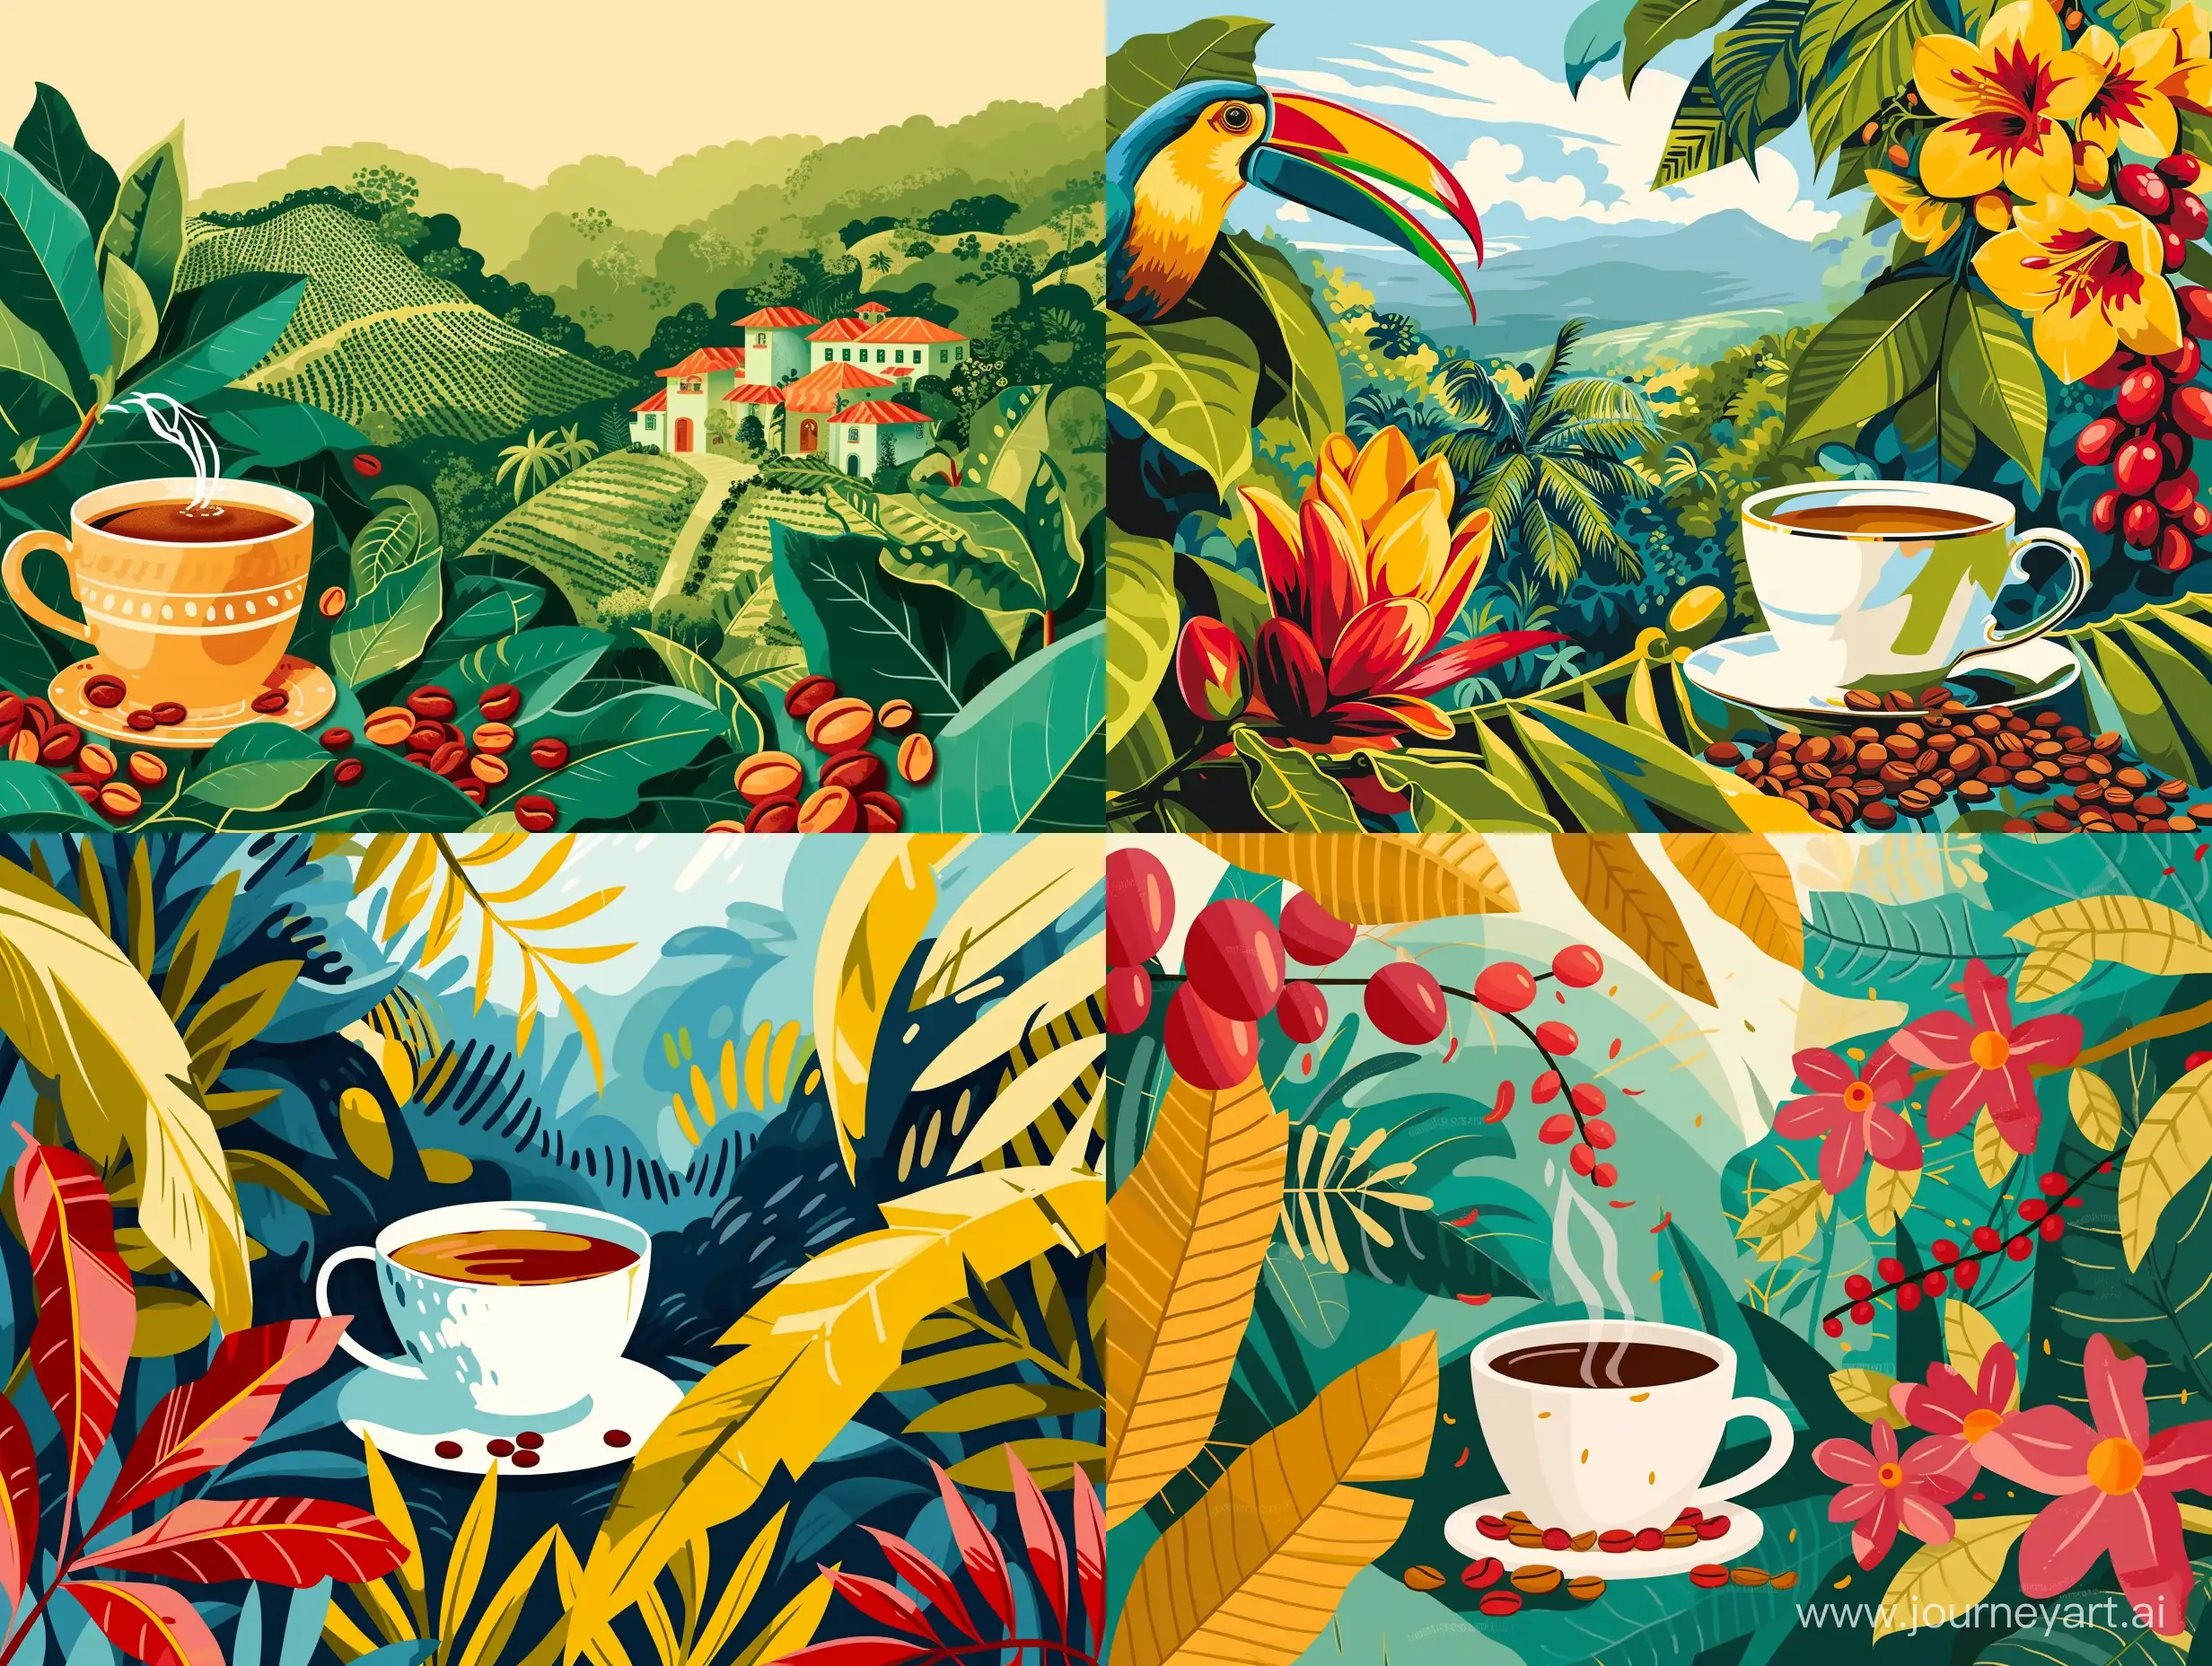 Иллюстрация в стиле современная абстракция чашка кофе, зерна кофе, плантации кофе в Бразилии, природа, растения, животные Бразилии